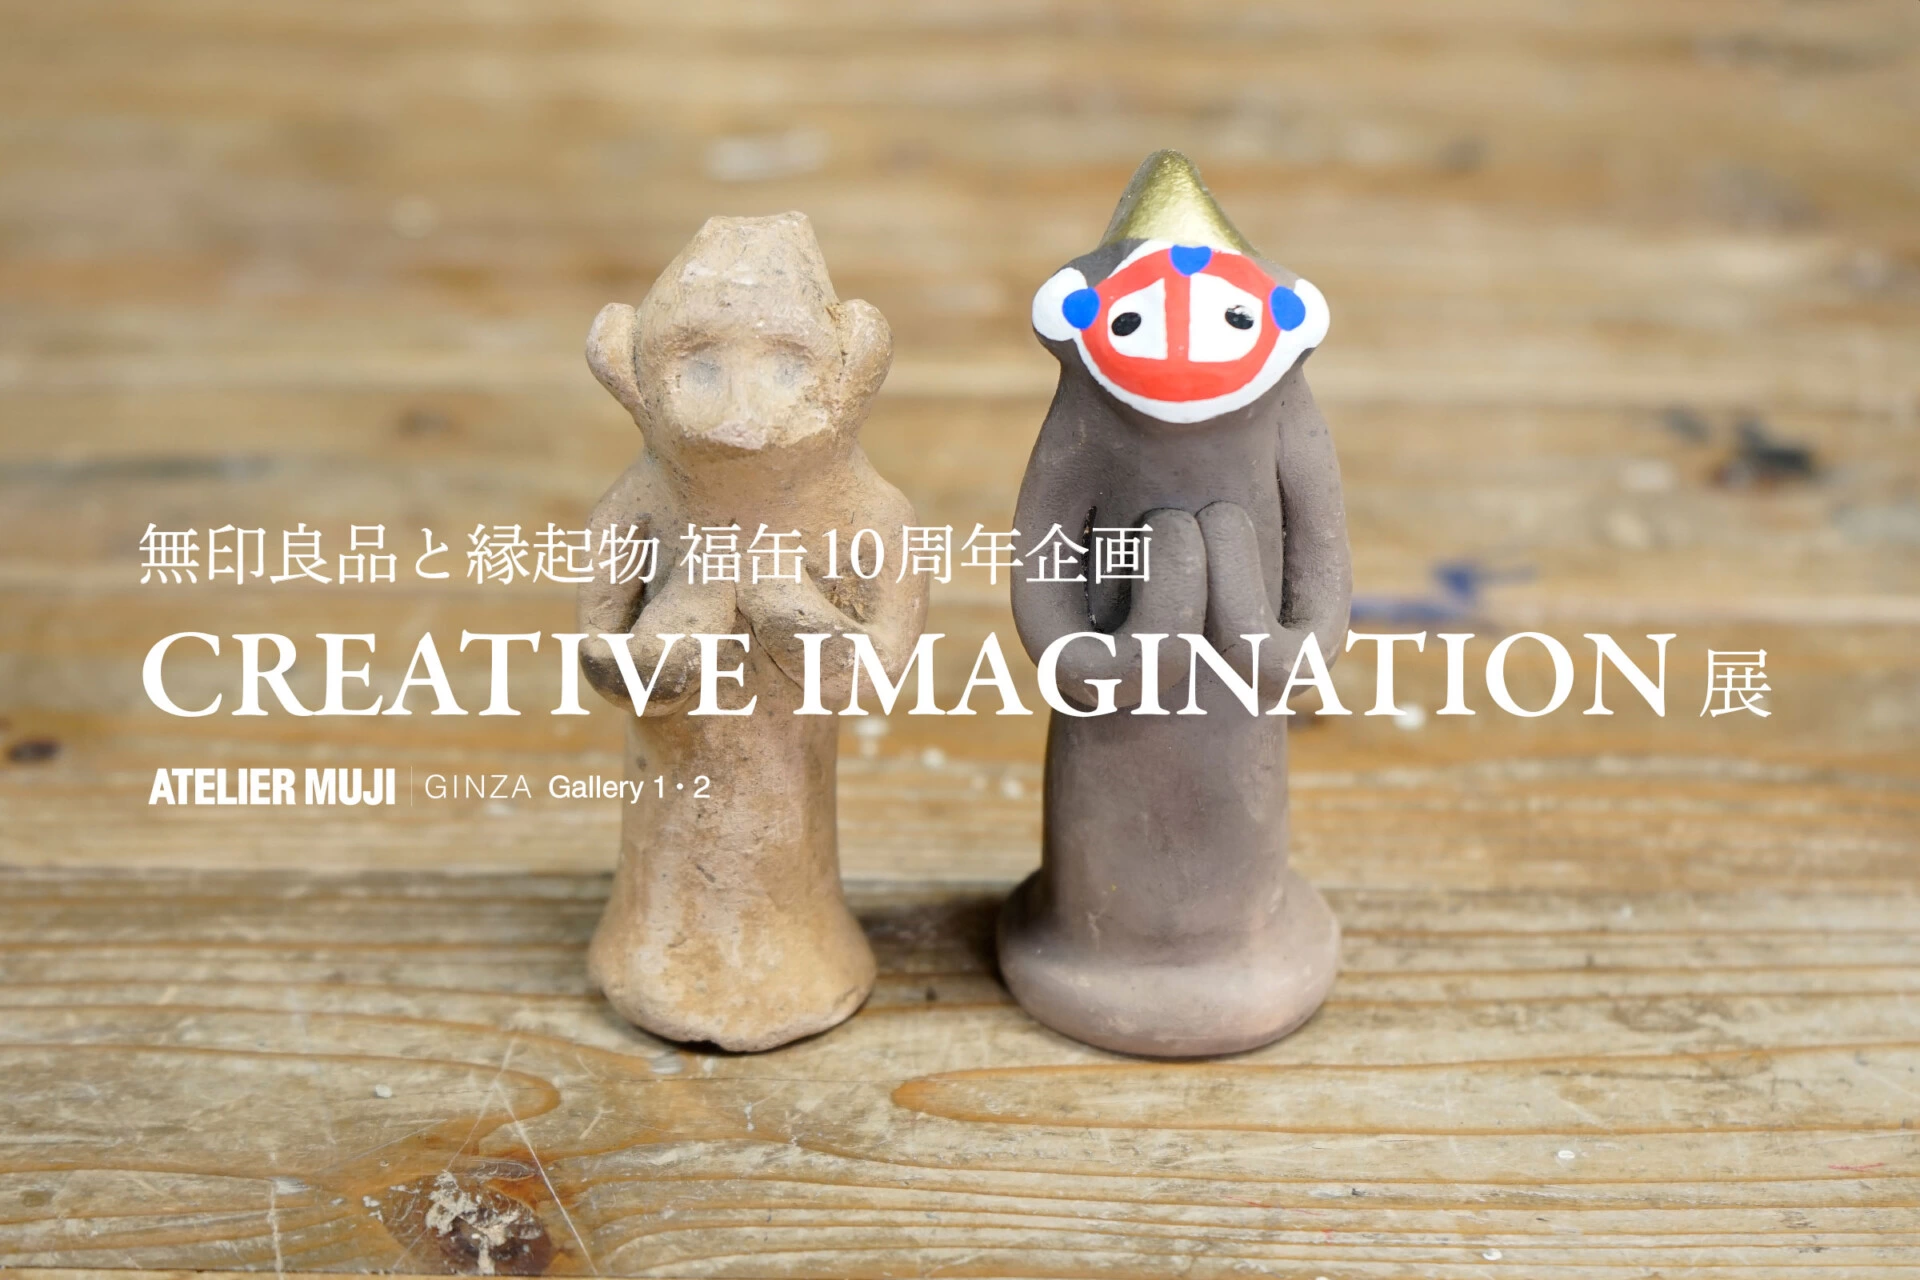 無印良品と縁起物 福缶10周年企画『CREATIVE IMAGINATION』展